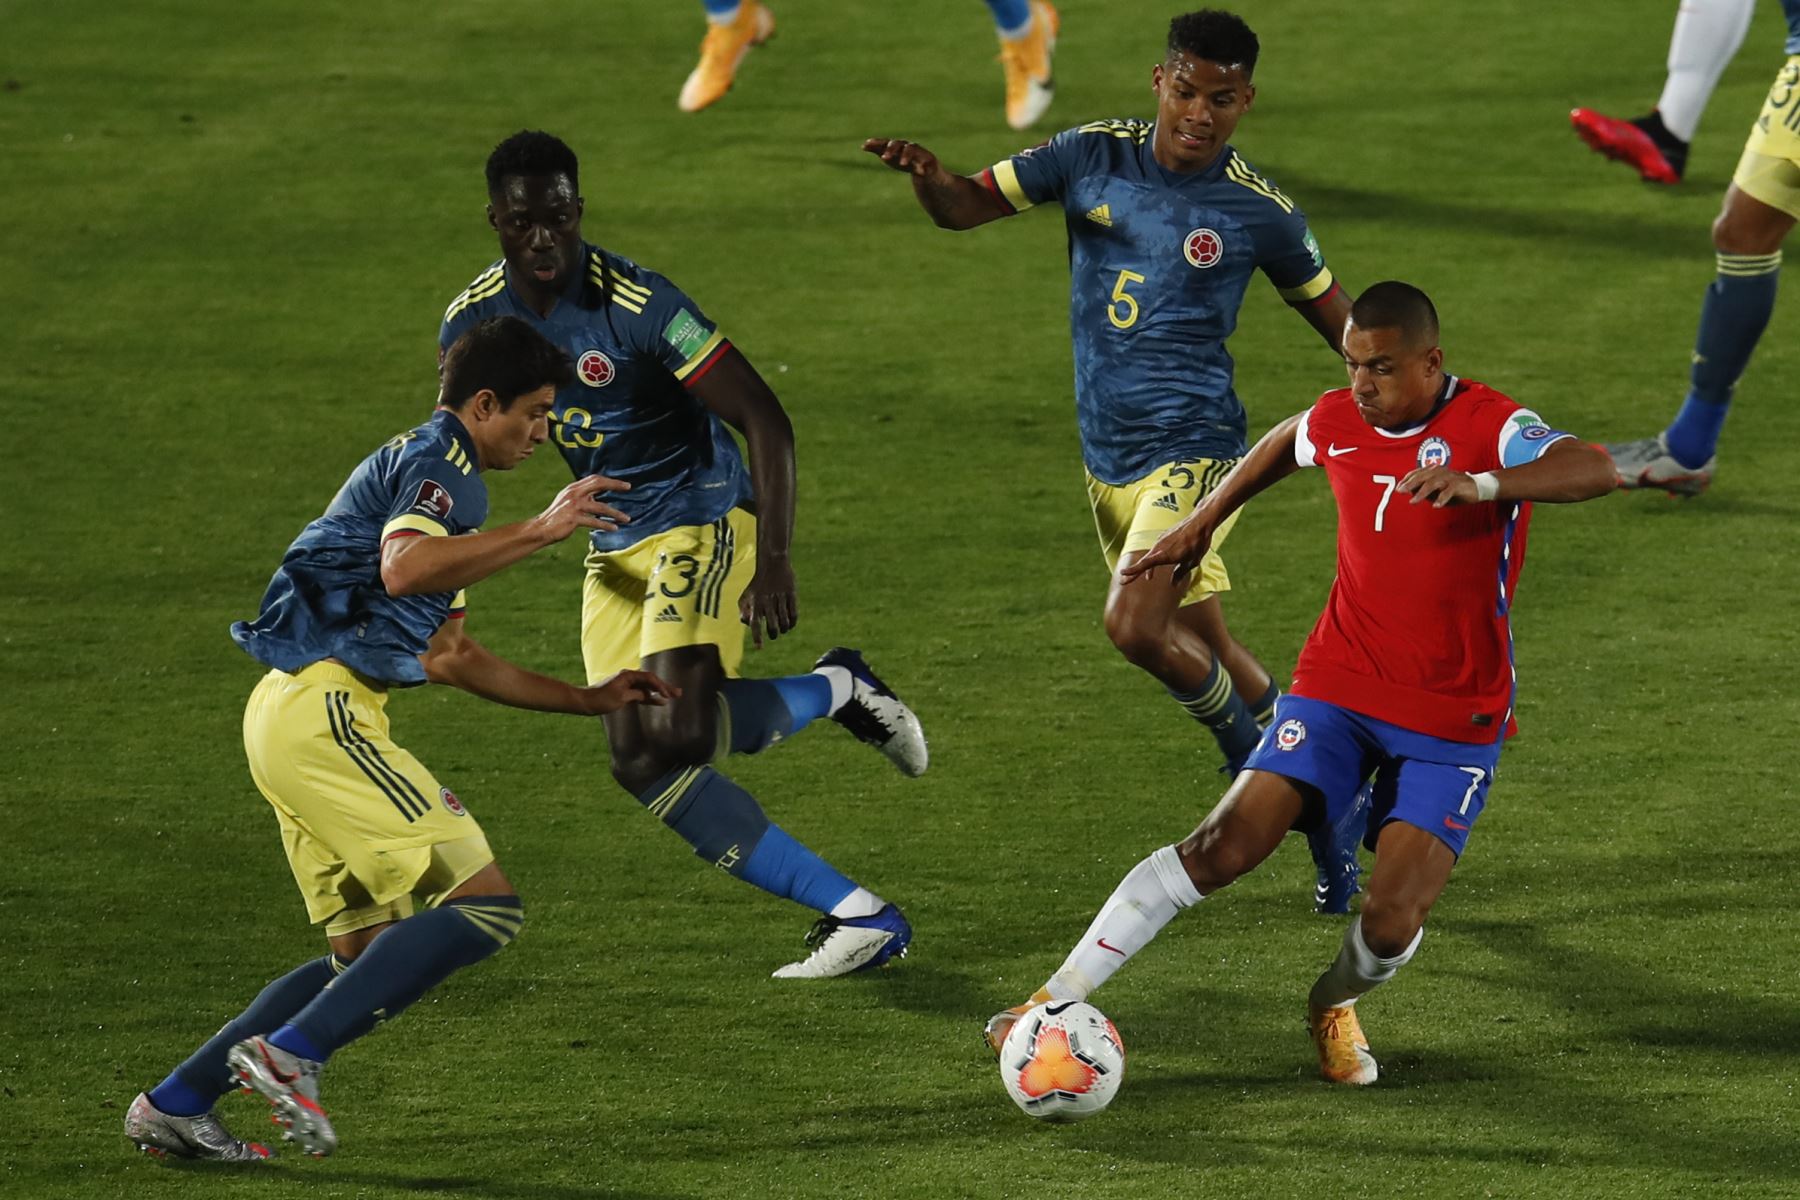 El chileno Alexis Sánchez compite por el balón con el colombiano Davinson Sánchez durante partido por Clasificatorias Qatar 2022, en el Estadio Nacional de Santiago. Foto: AFP